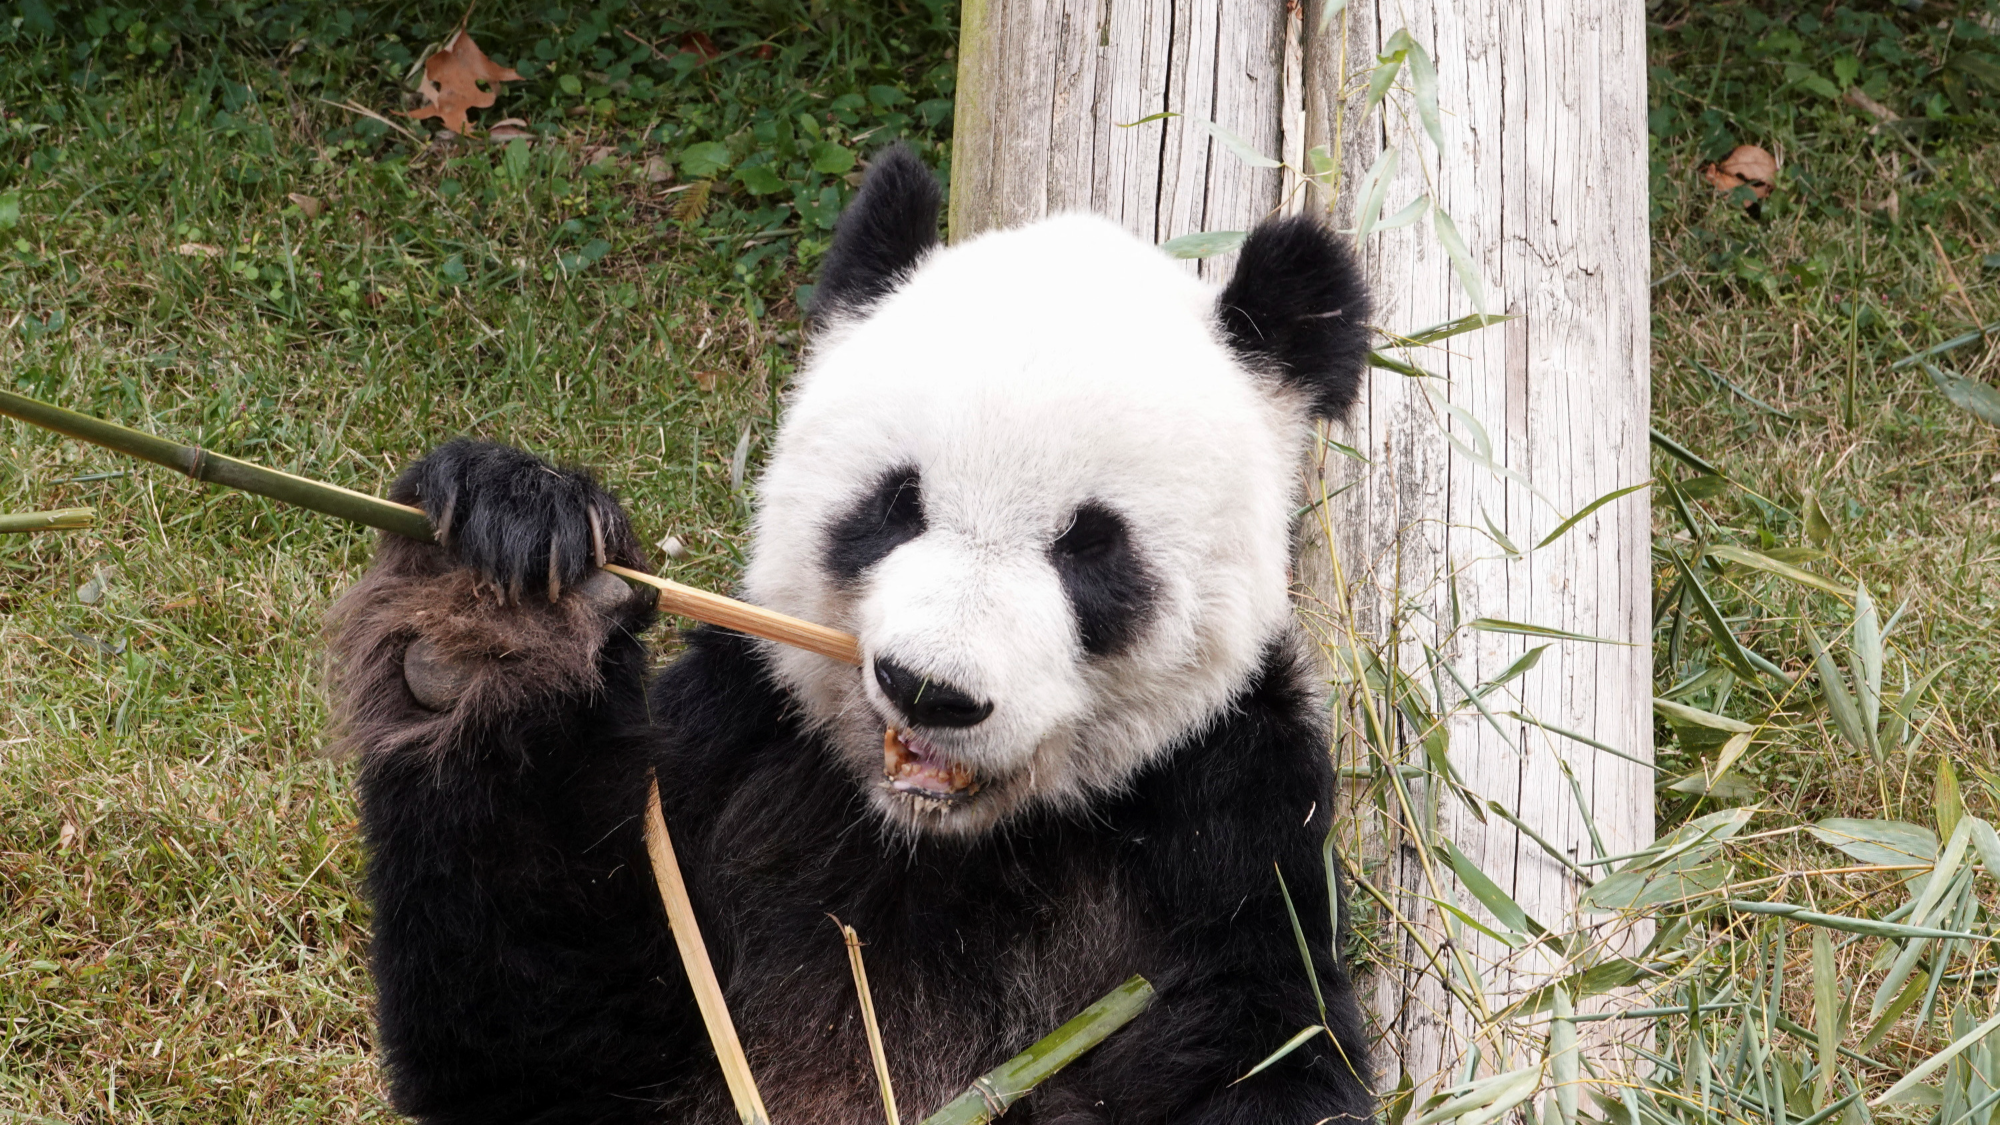 Cómo hizo China para salvar a los osos panda gigantes de la extinción? -  BBC News Mundo